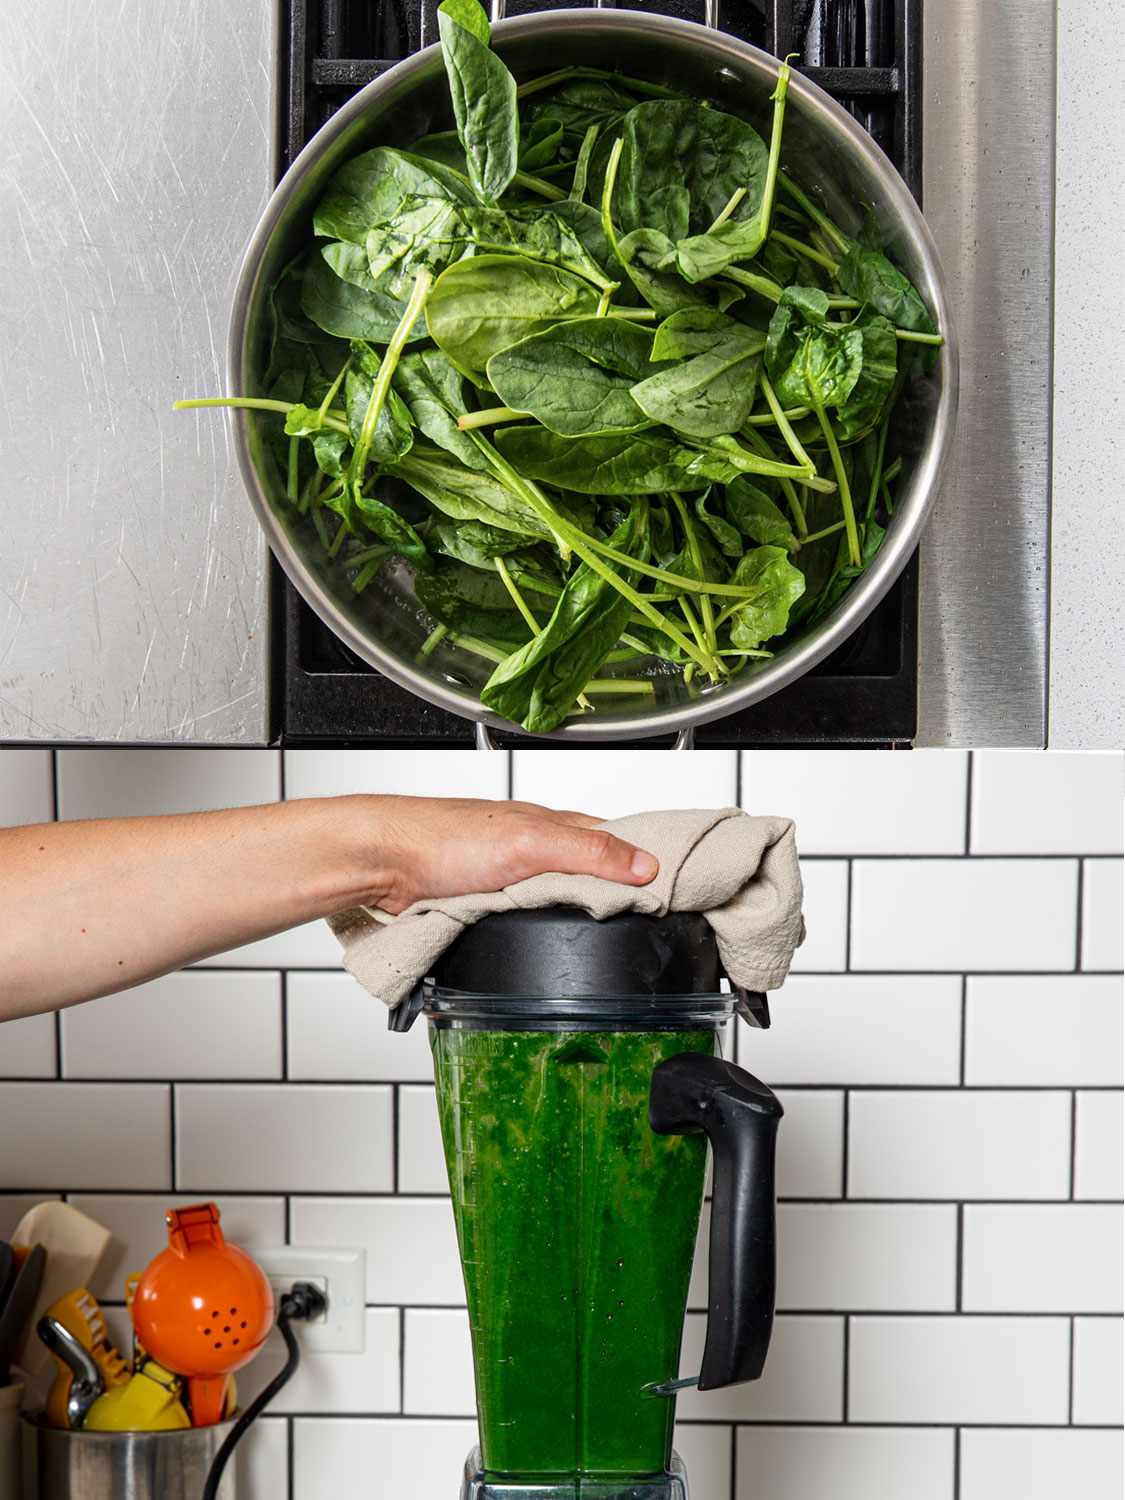 二图像拼贴。上图:锅里的生菠菜。下图:一只手按住搅拌器的盖子，搅拌器里有菠菜泥